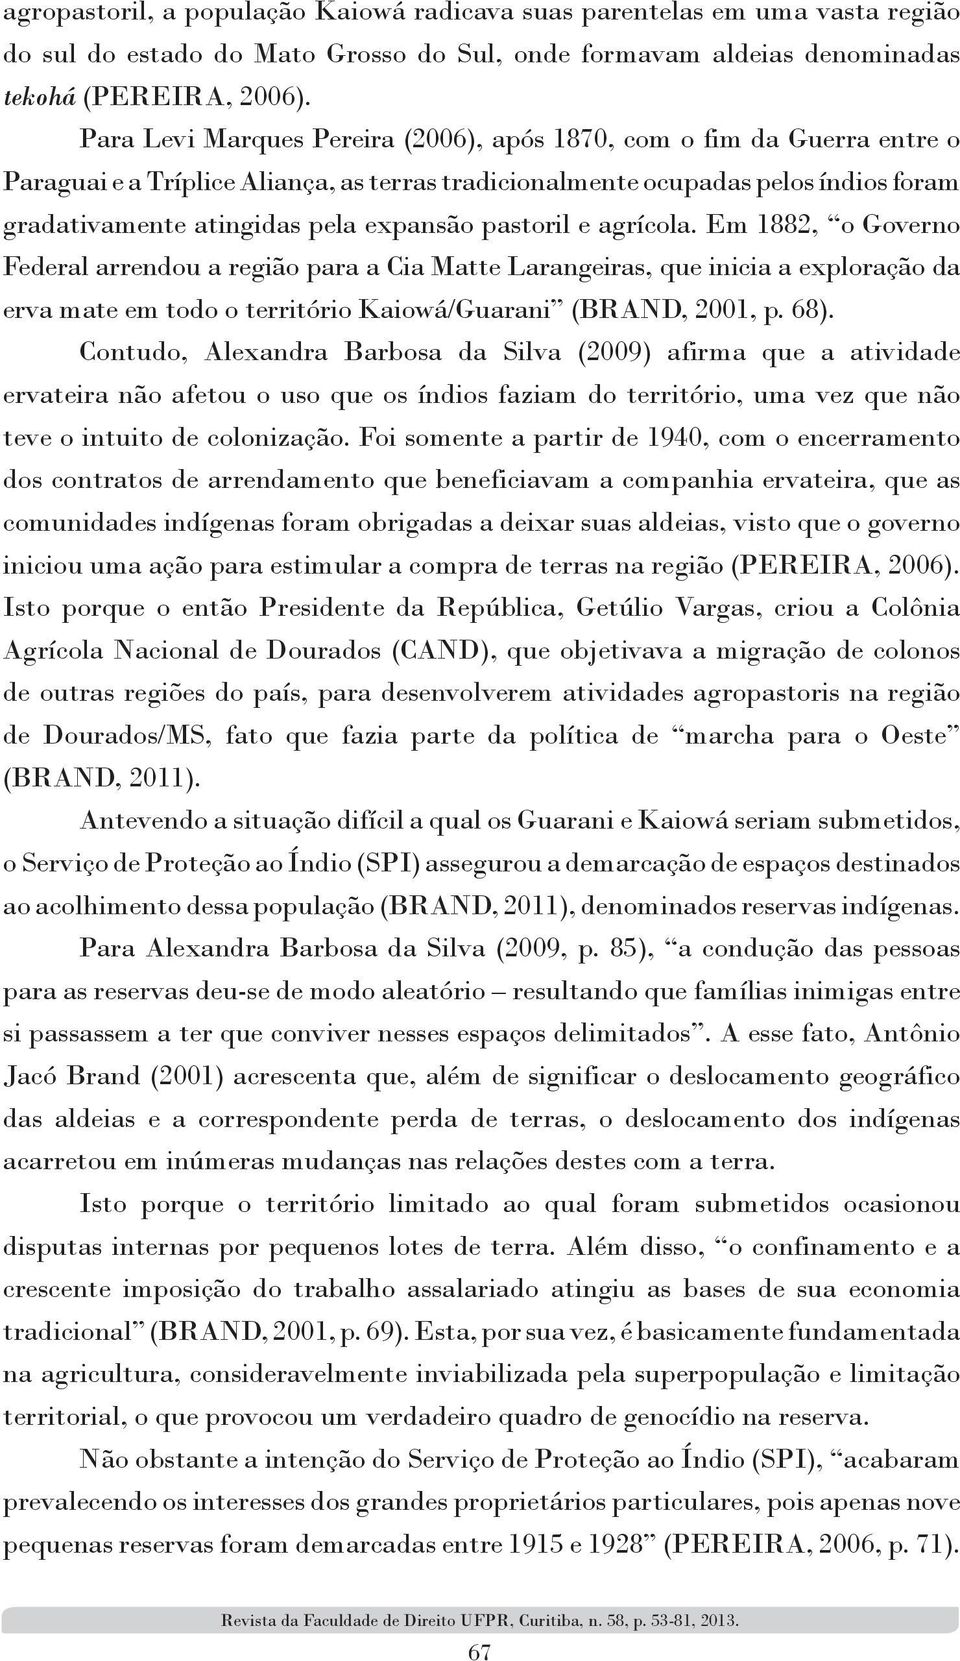 pastoril e agrícola. Em 1882, o Governo Federal arrendou a região para a Cia Matte Larangeiras, que inicia a exploração da erva mate em todo o território Kaiowá/Guarani (BRAND, 2001, p. 68).